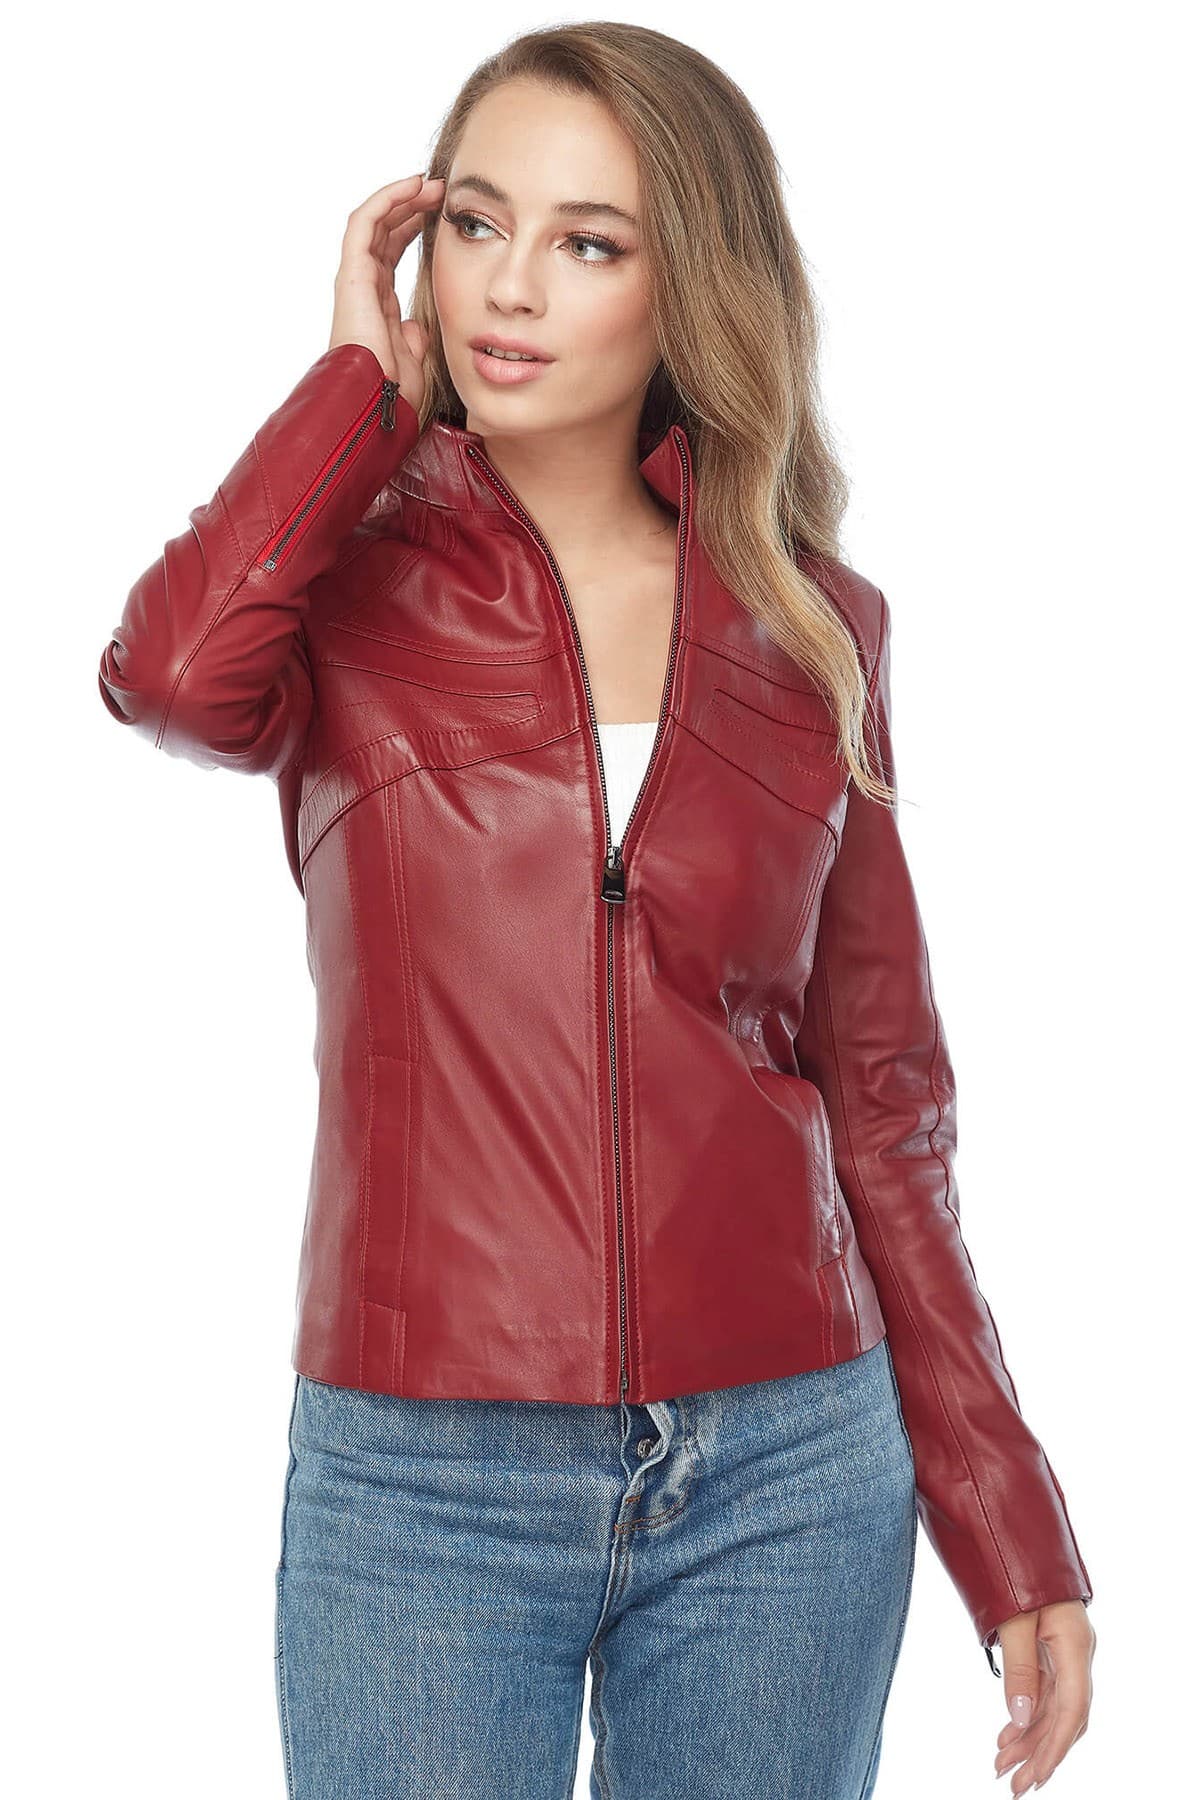 Karen Gillan Women's 100 % Real Red Leather Jacket